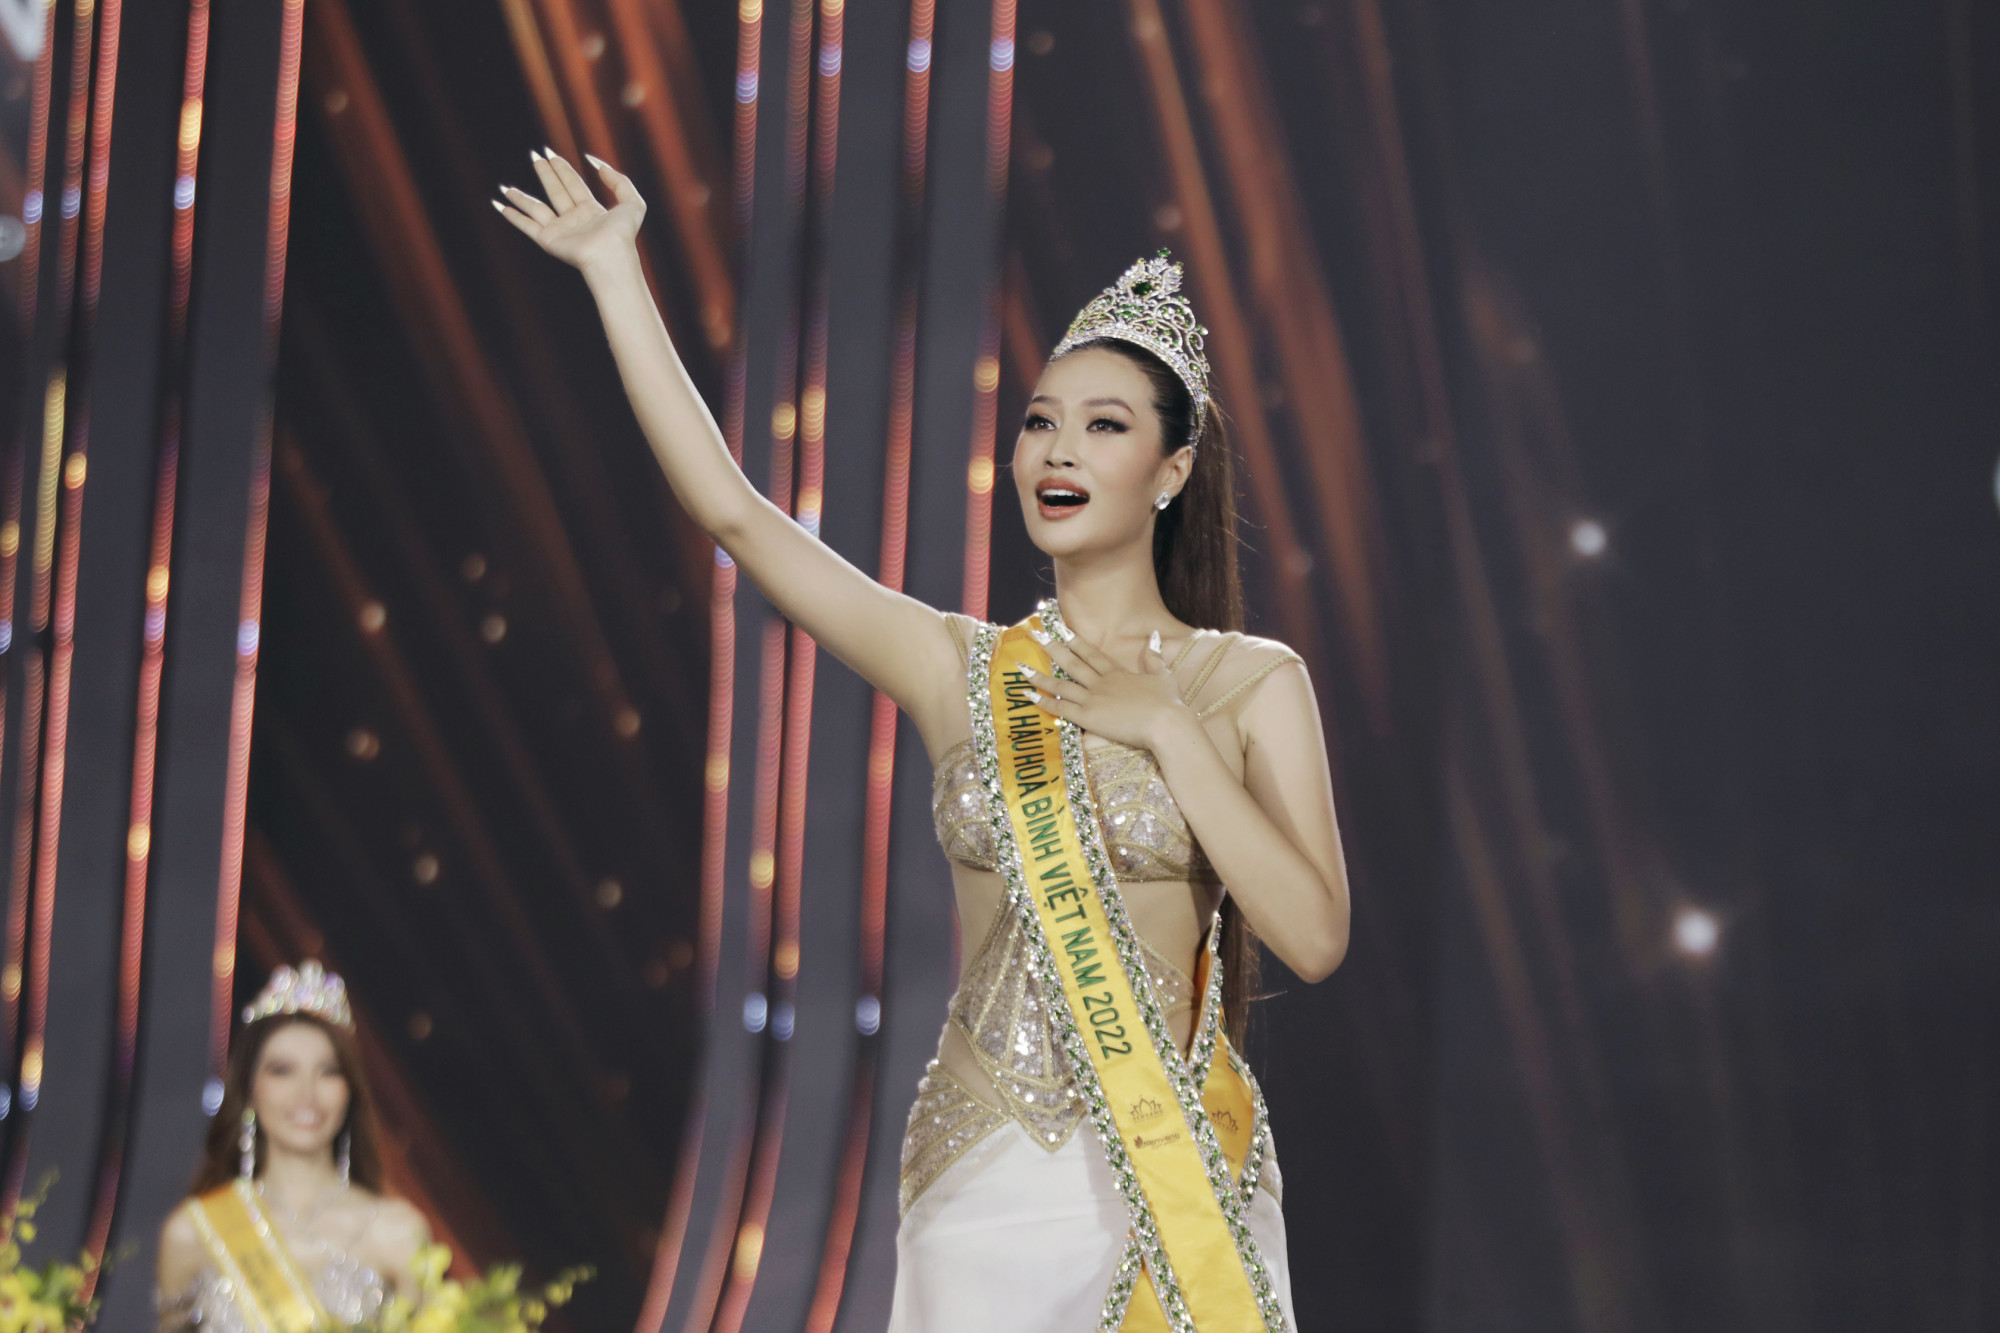 Đoàn Thiên Ân đăng quang Hoa hậu Hoà bình Việt Nam 2022 - Miss Grand VietNam 2022 vào tối 1/10. Hoa hậu sinh năm 2000, cao m175 với số đo hình thể là 88,5-66-98cm. 